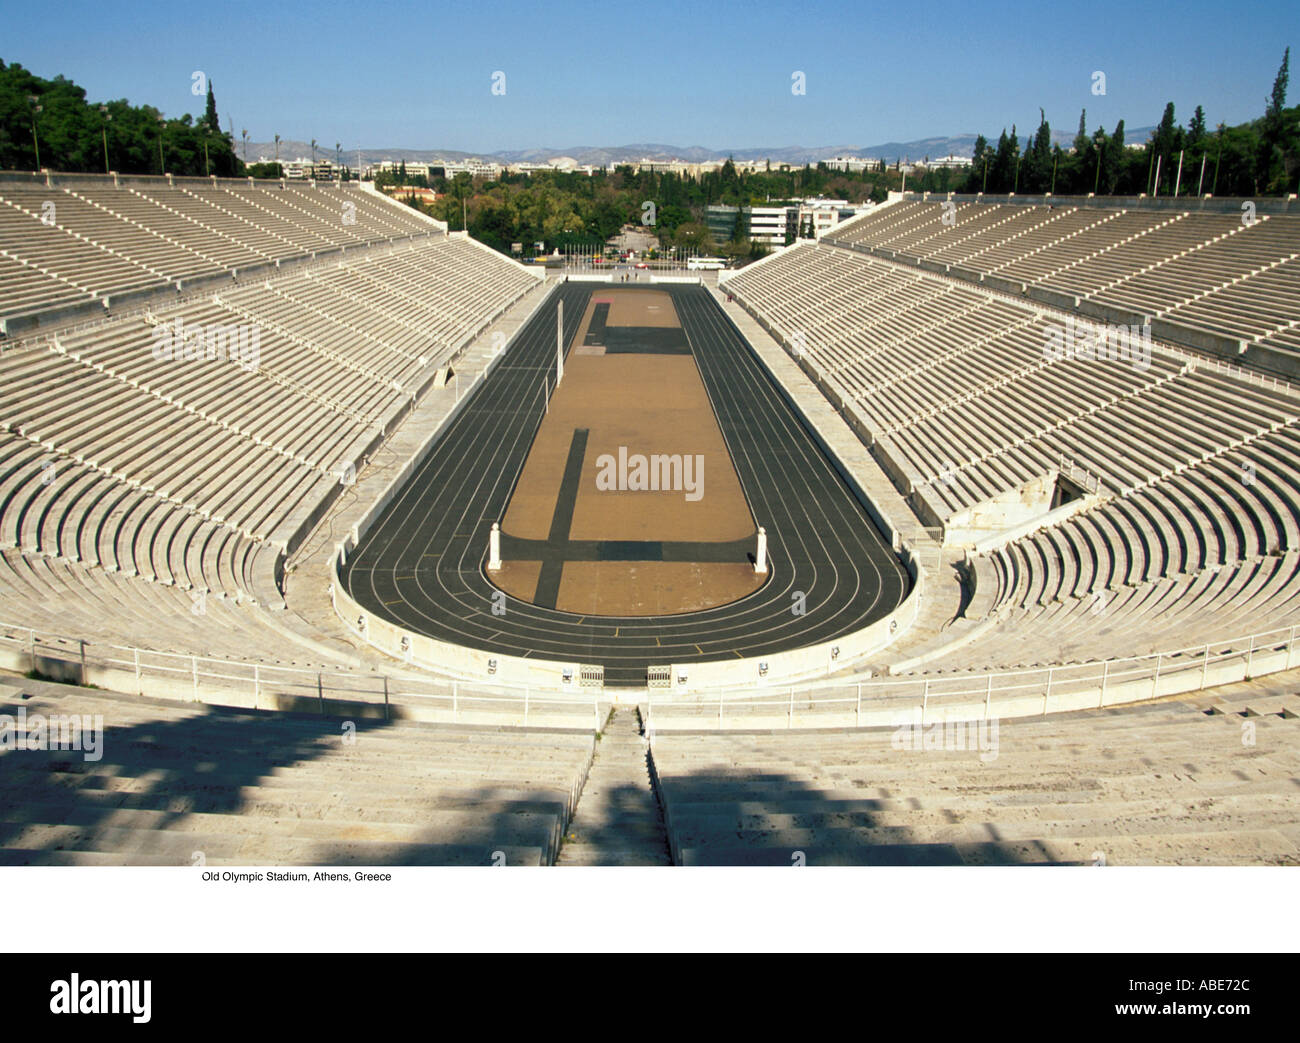 Первый олимпийский стадион. Стадион Панатинаикос в Афинах. Олимпийский стадион Афины 2004. Олимпия стадион древняя Греция. Олимпийский стадион в Афинах древний.